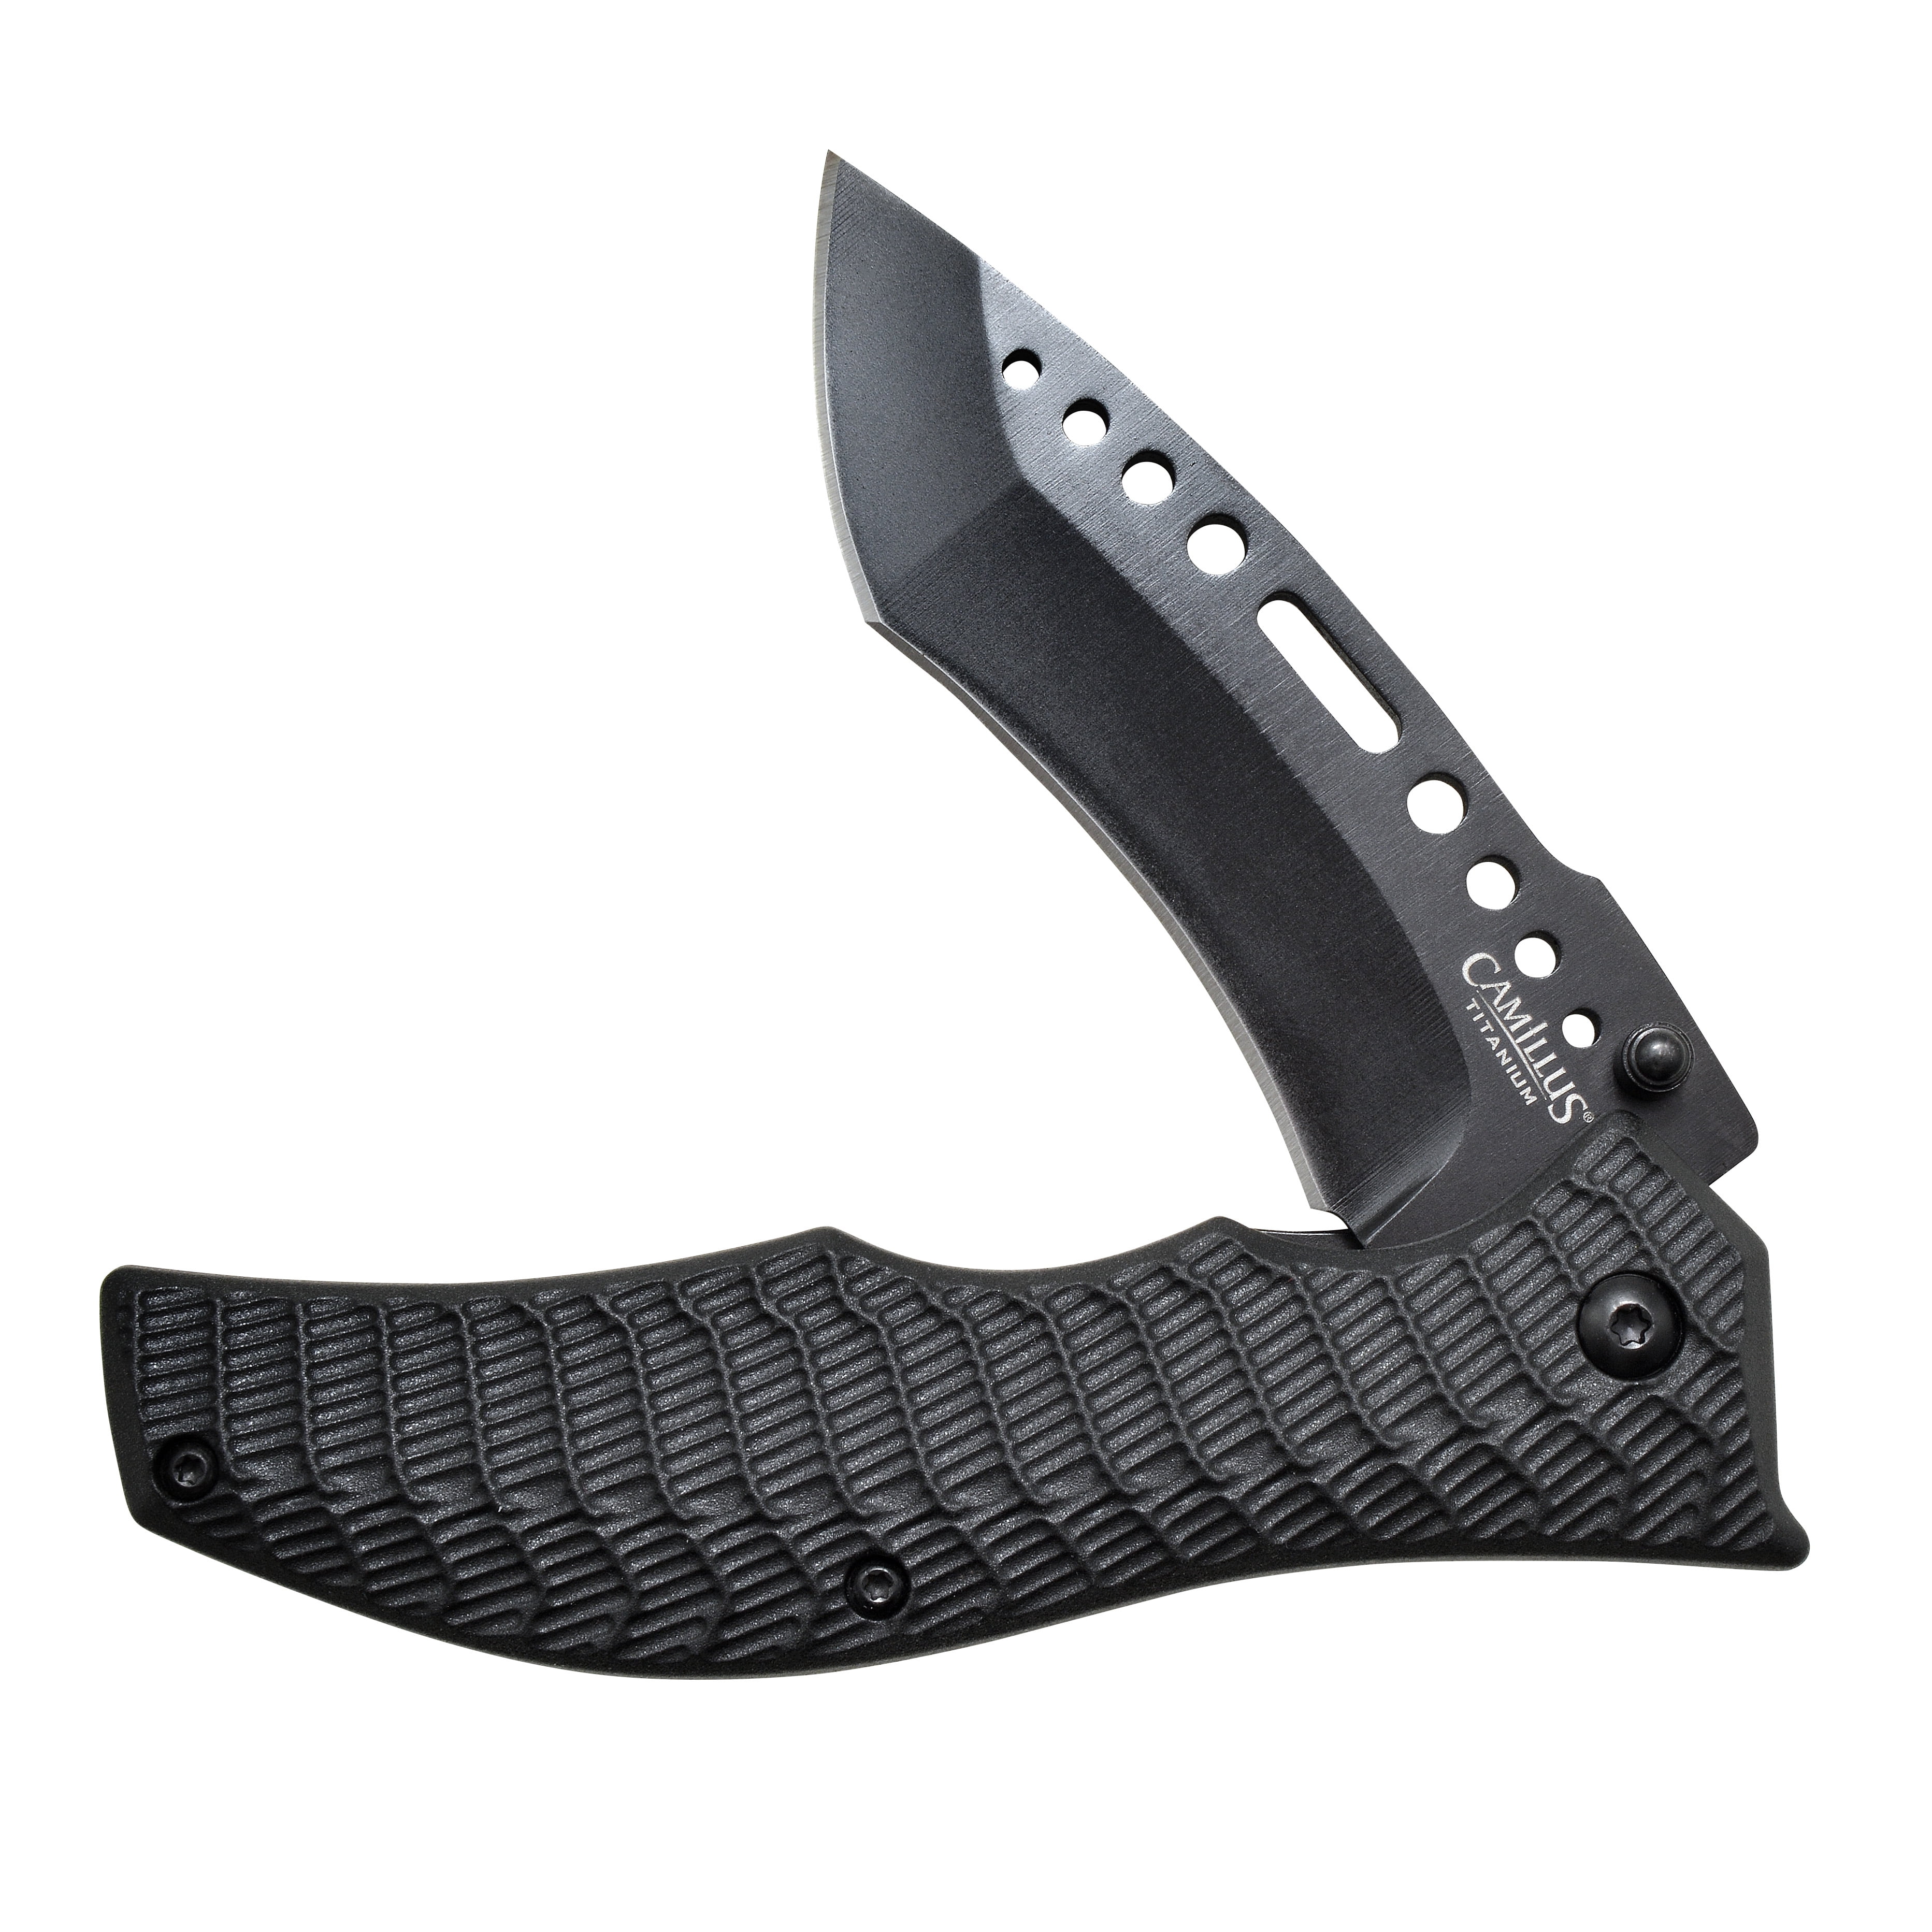 Camillus G-Hammer 7.85 Pocket Folding Knife, Stainless Steel 3.5 Blade,  Glass-Filled Nylon Handle, Black 